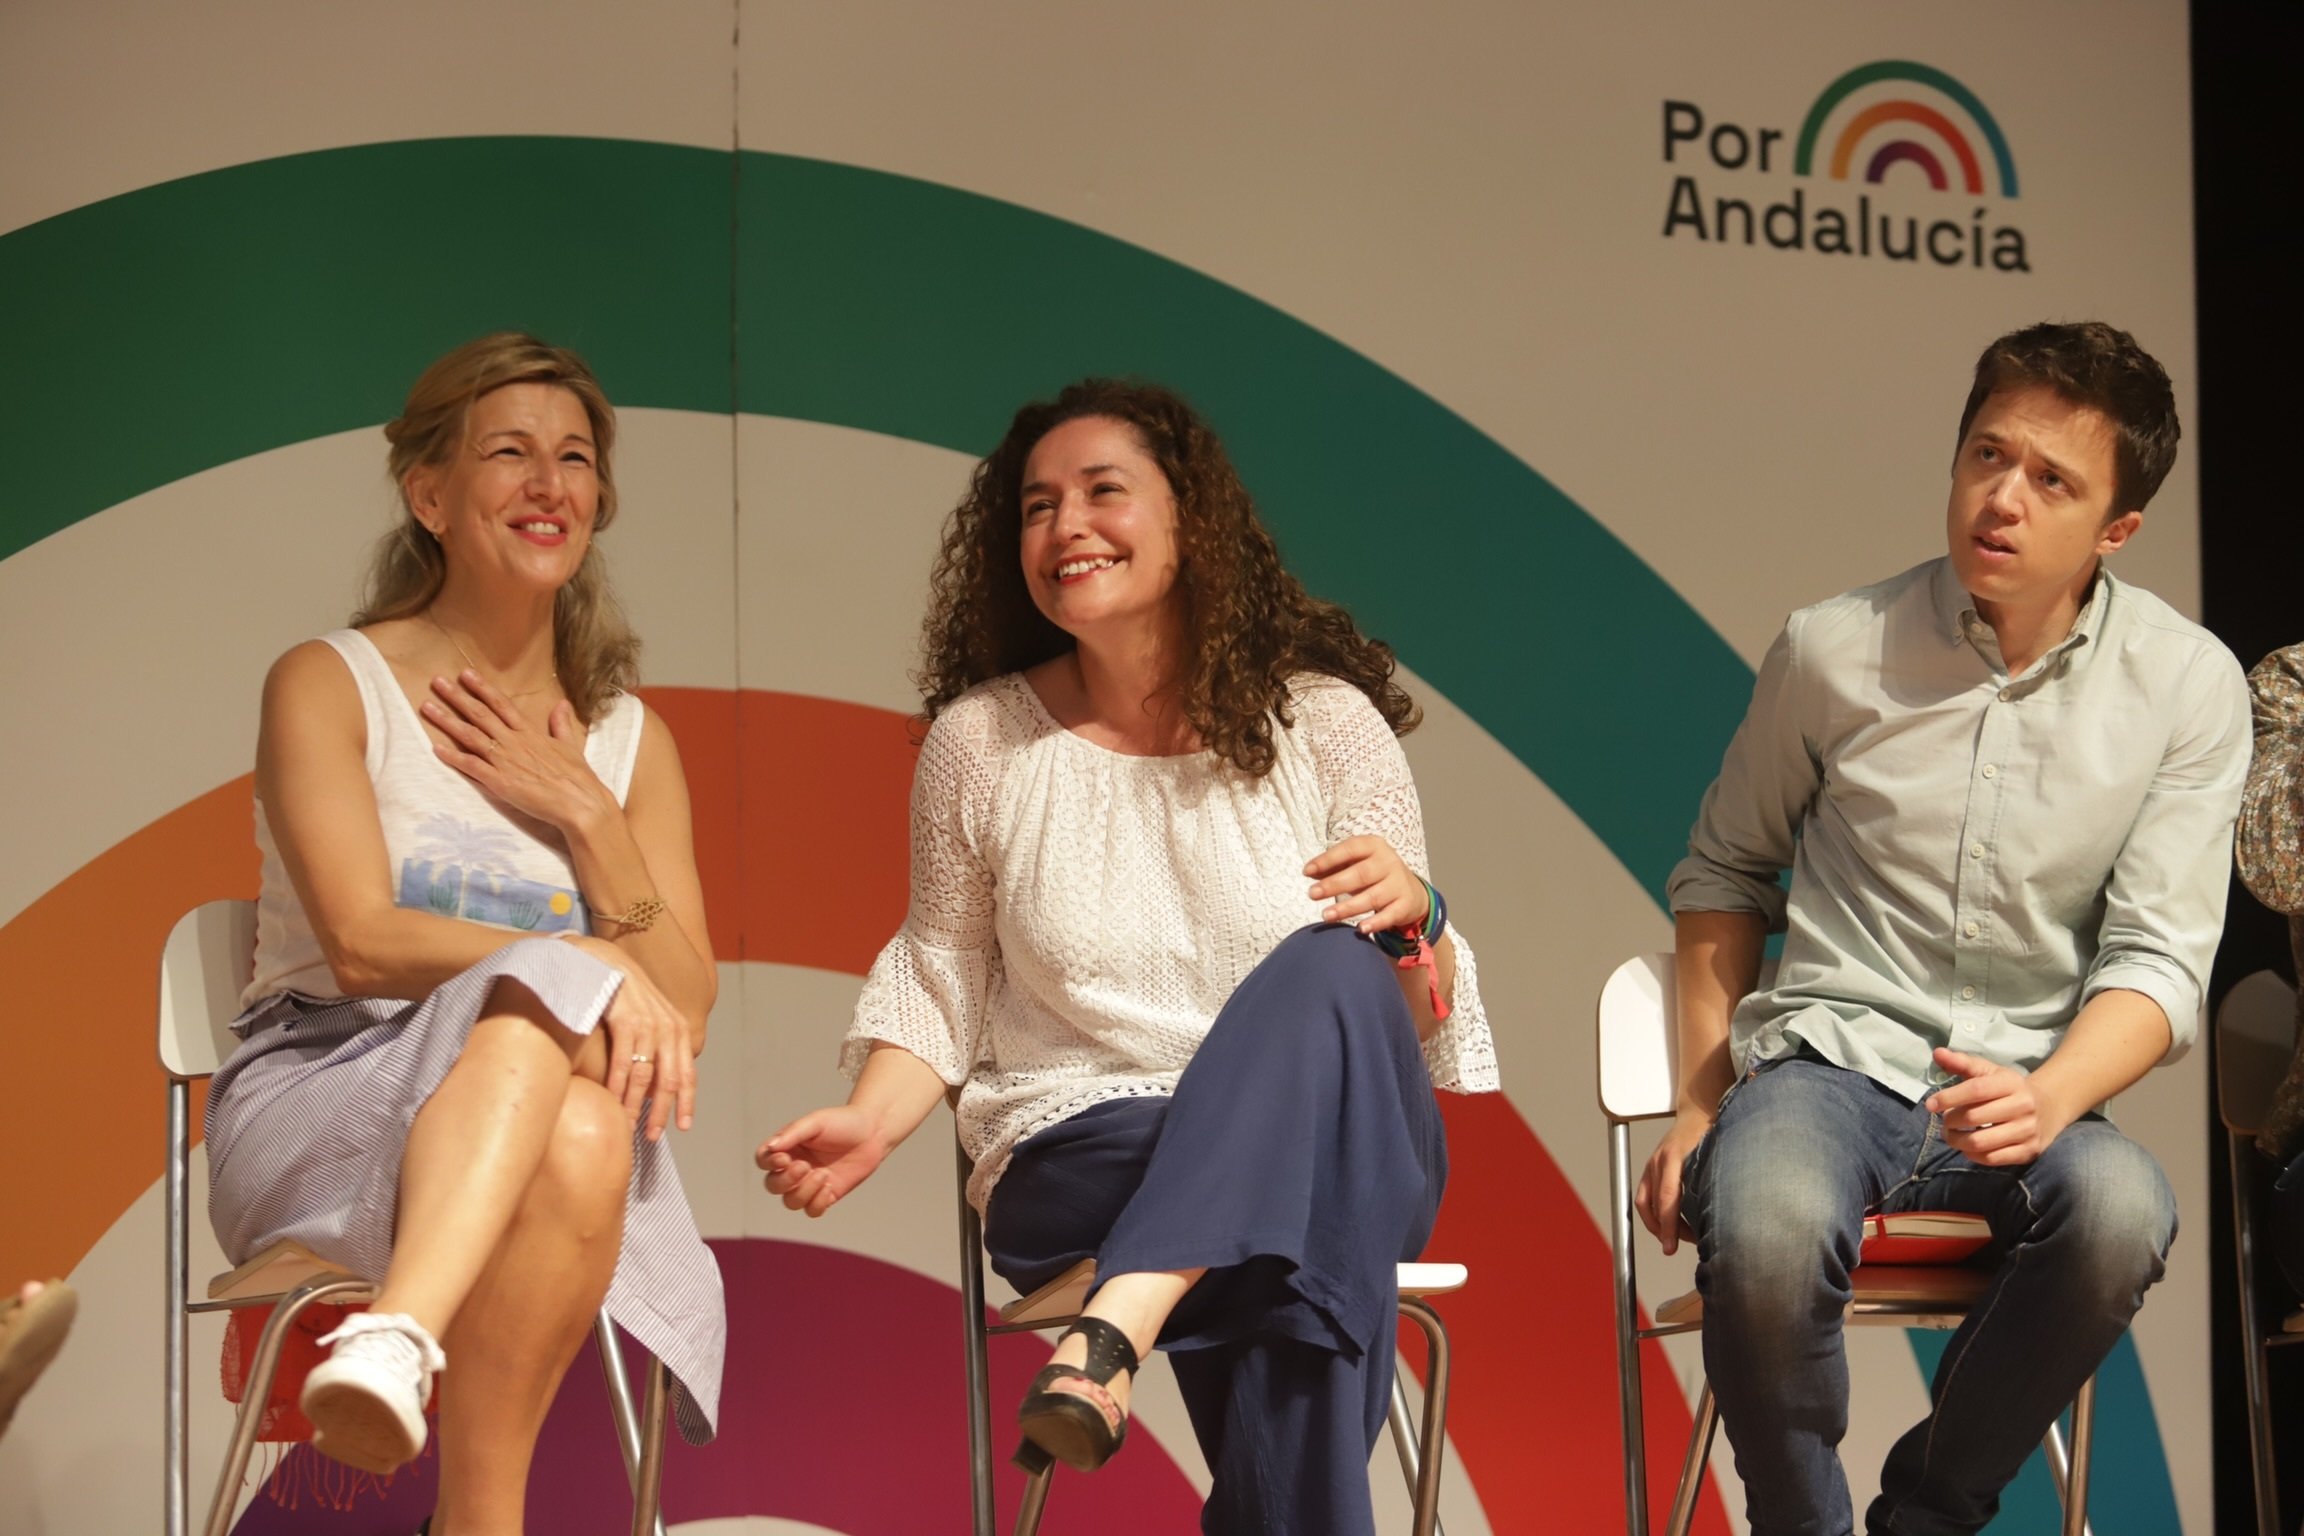 El front de Podemos a Andalusia s'enfonsa carregant contra Teresa Rodríguez